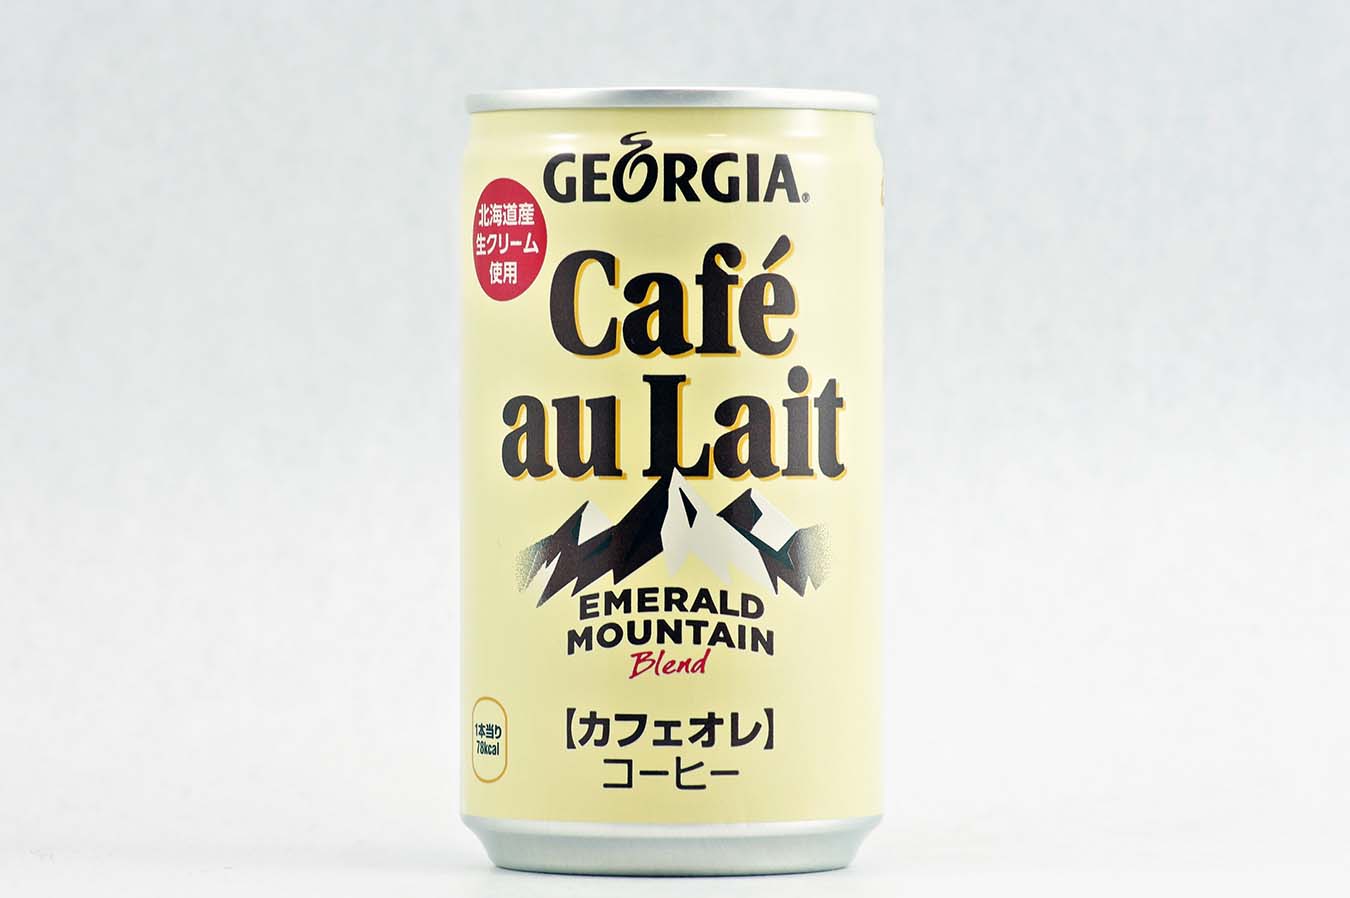 GEORGIA エメラルドマウンテンブレンド カフェオレ アルミ缶 170g缶 2015年4月